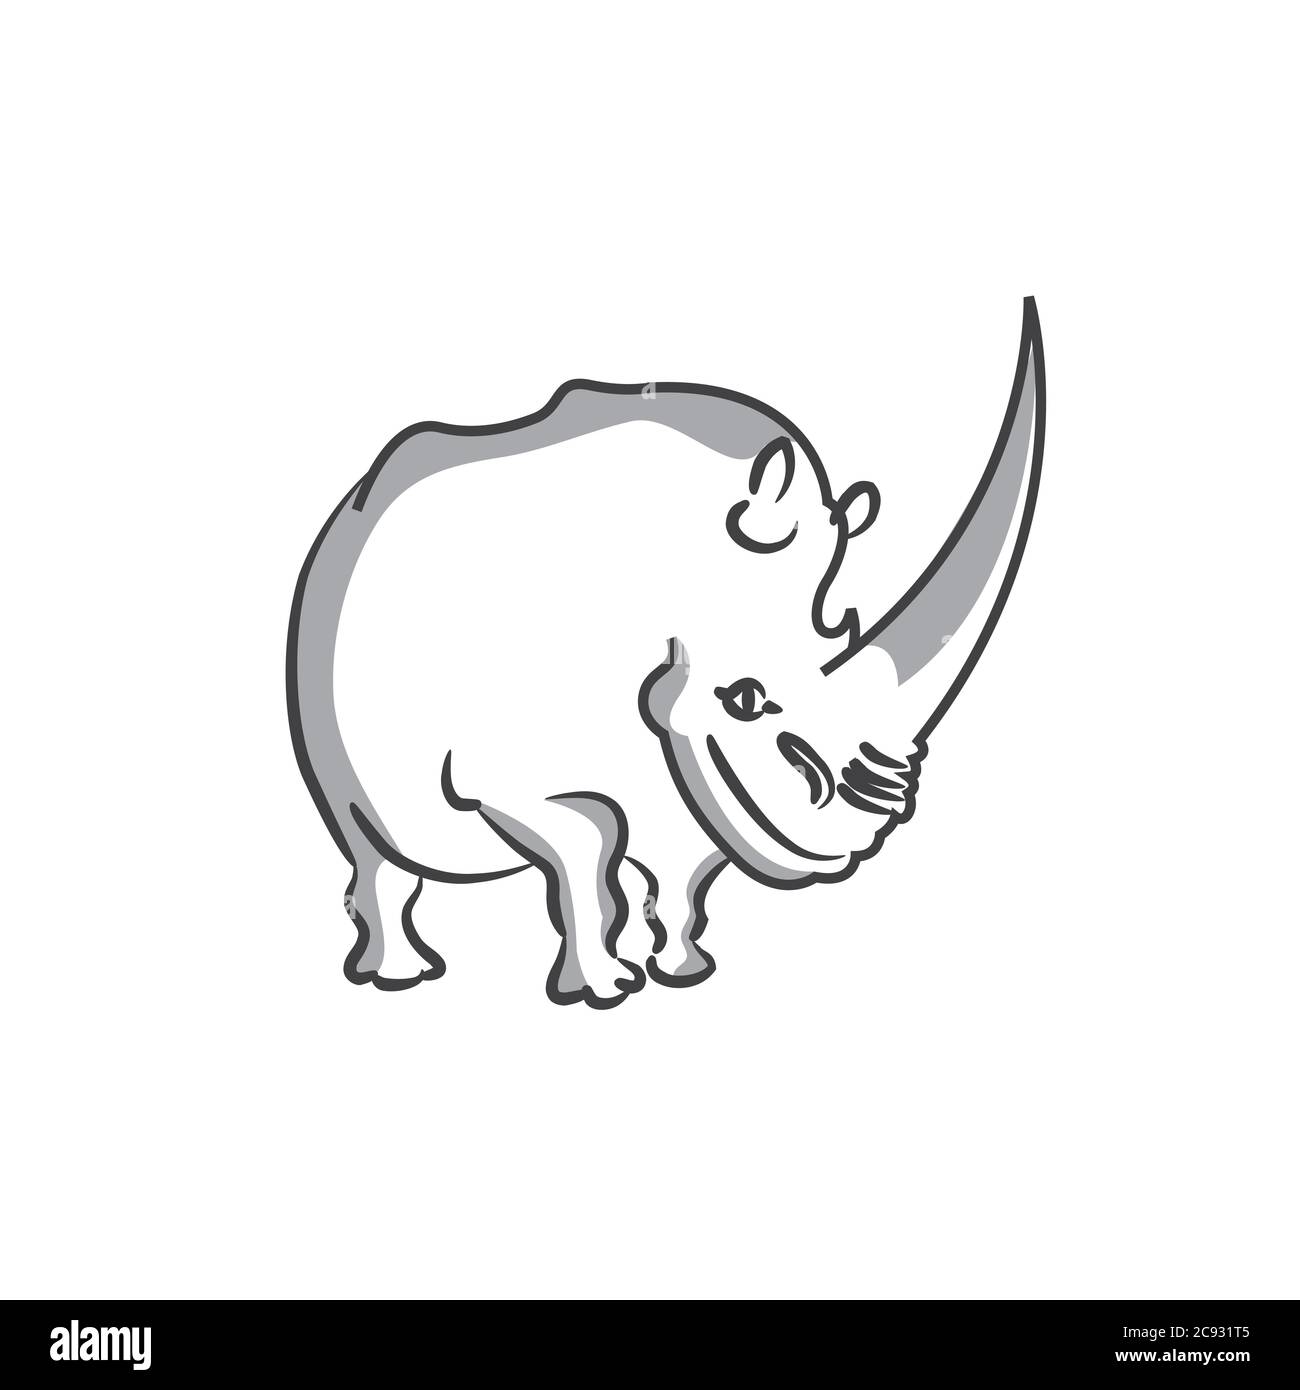 Un design a linea unica di rhino.Hand disegnata stile minimalista illustrazione vettoriale Illustrazione Vettoriale